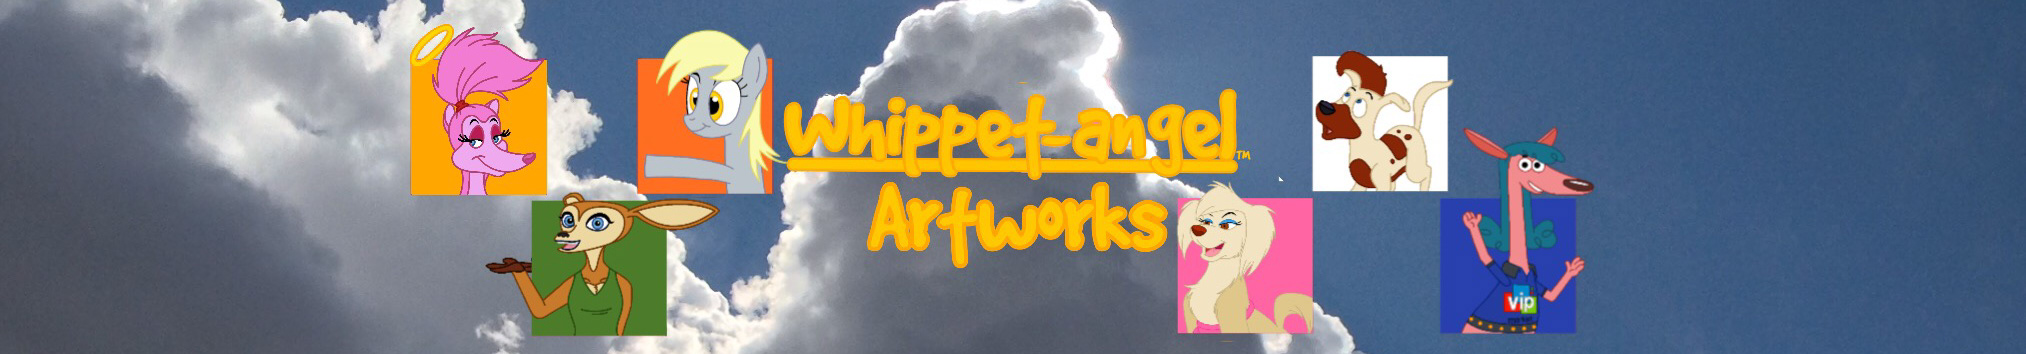 Whippet angel artworks!'s profile banner